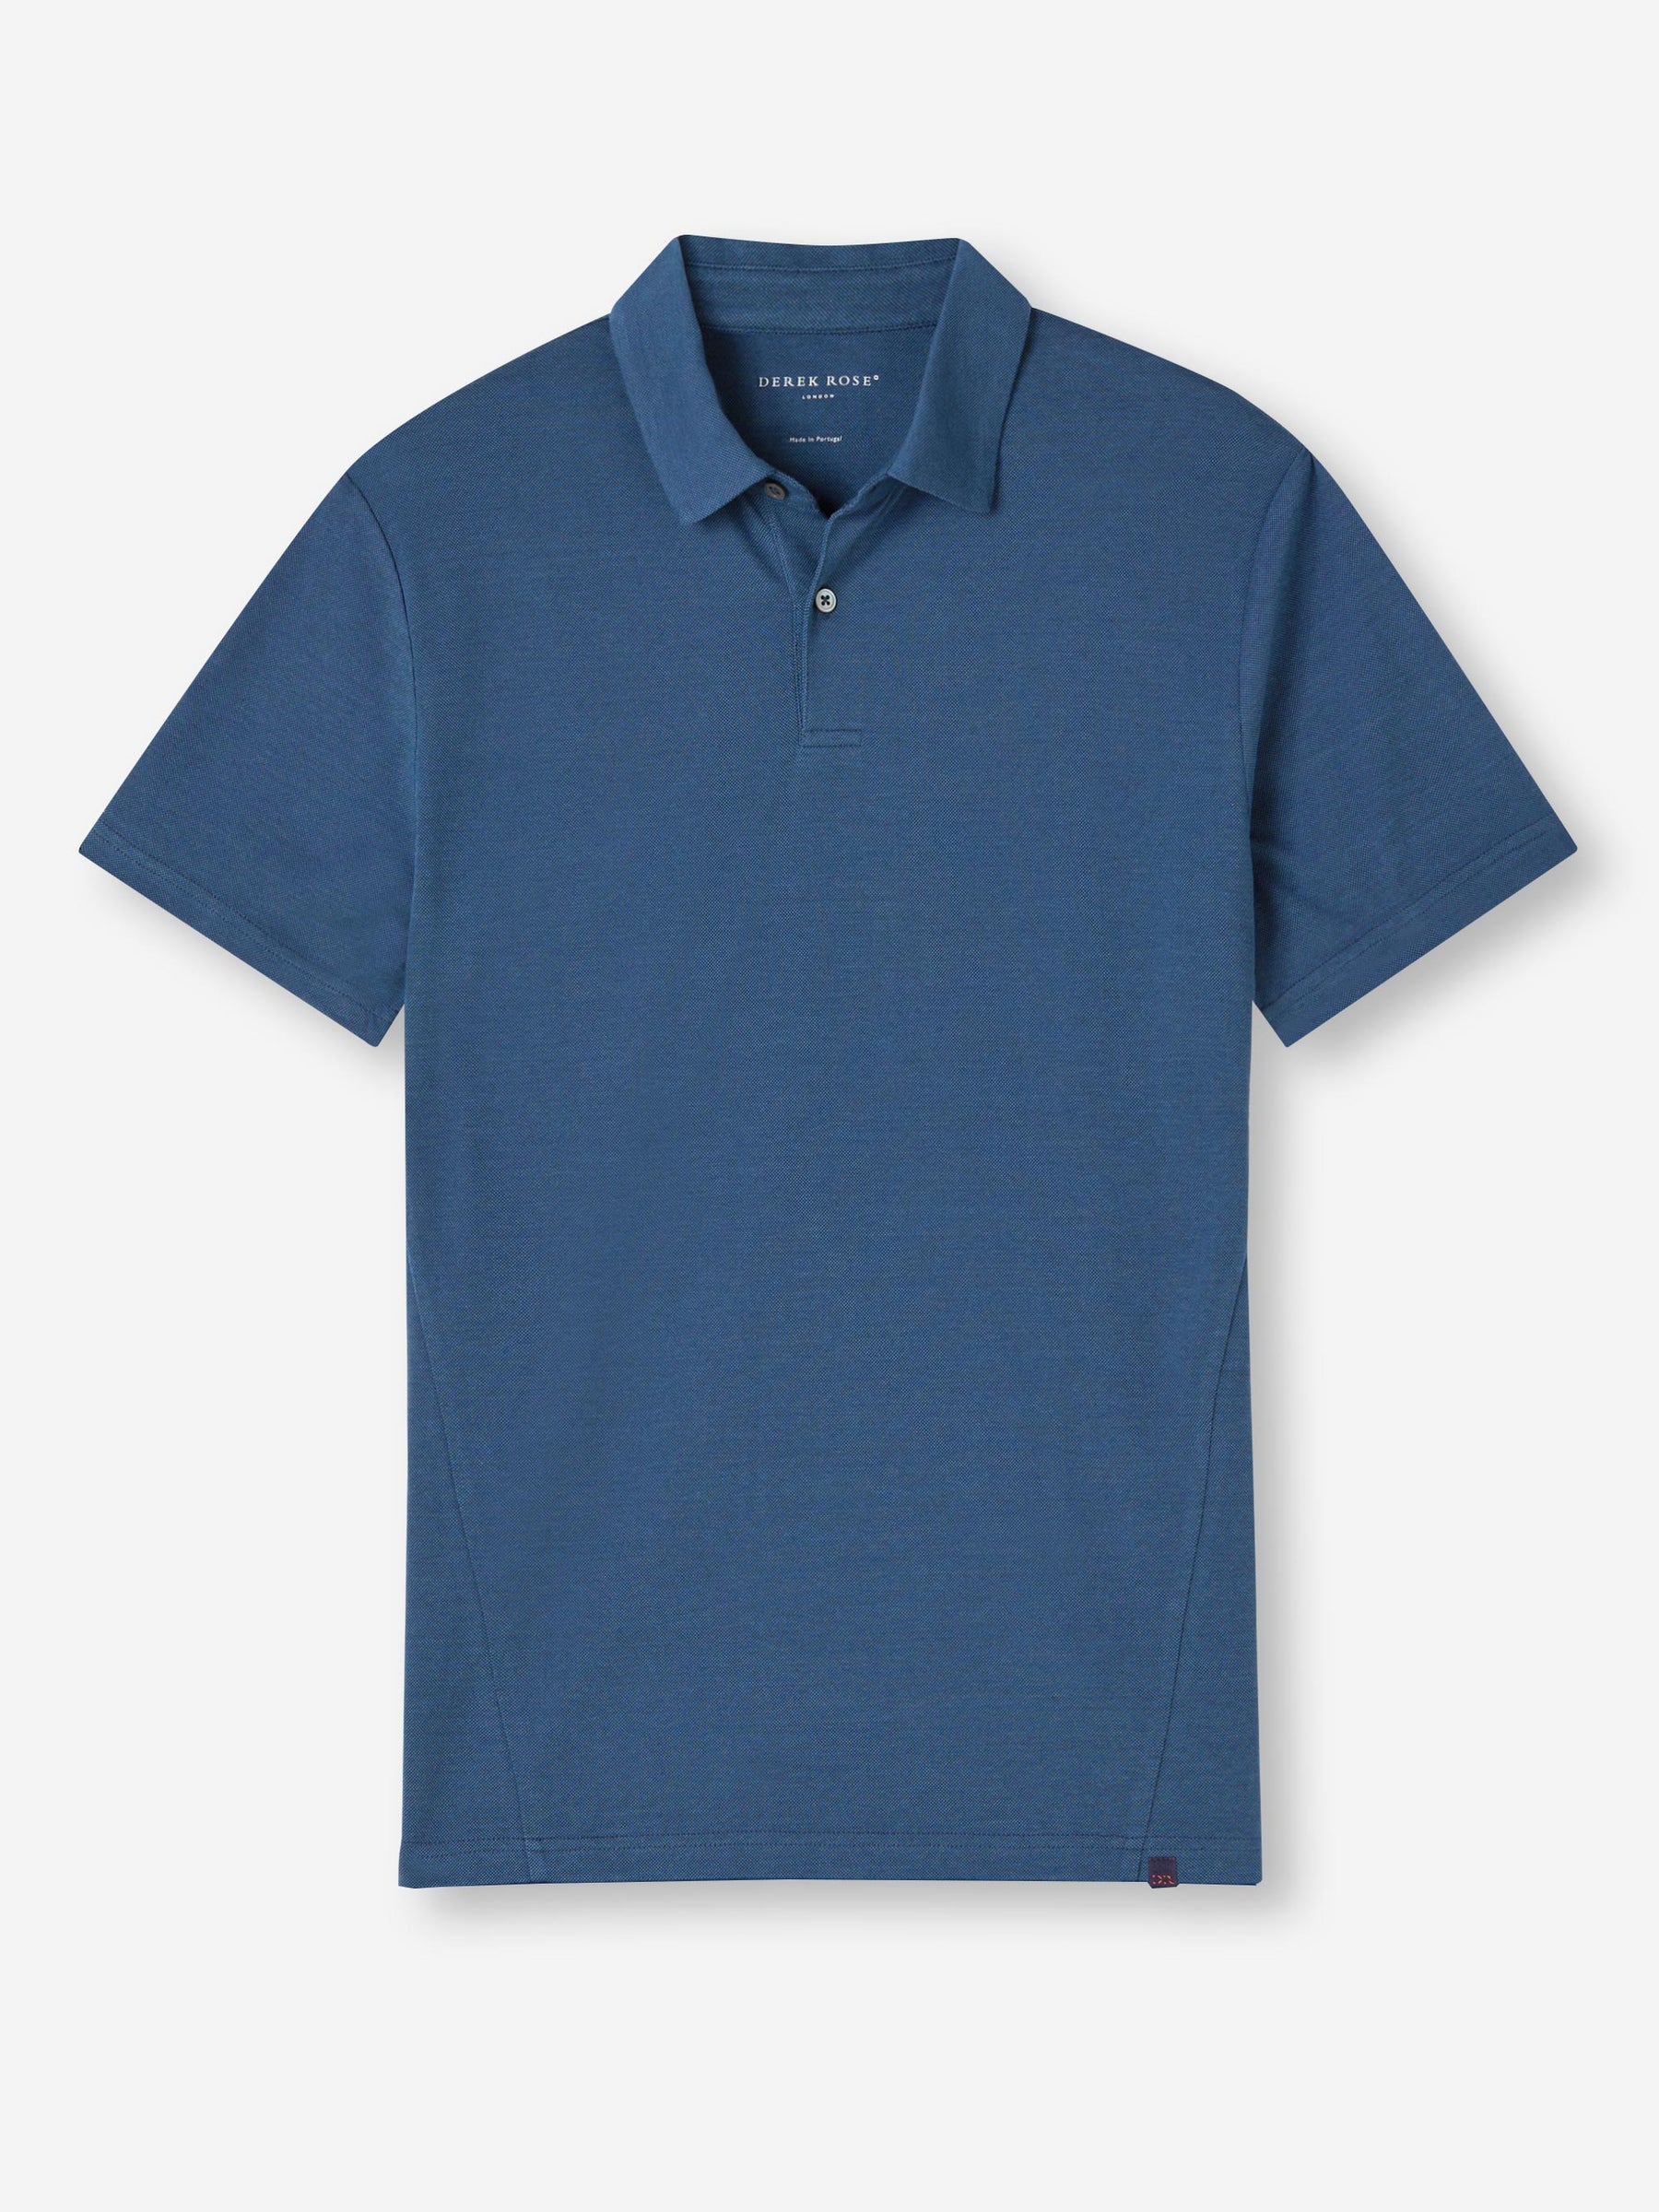 Men's Polo Shirt Ramsay Pique Cotton Tencel Denim